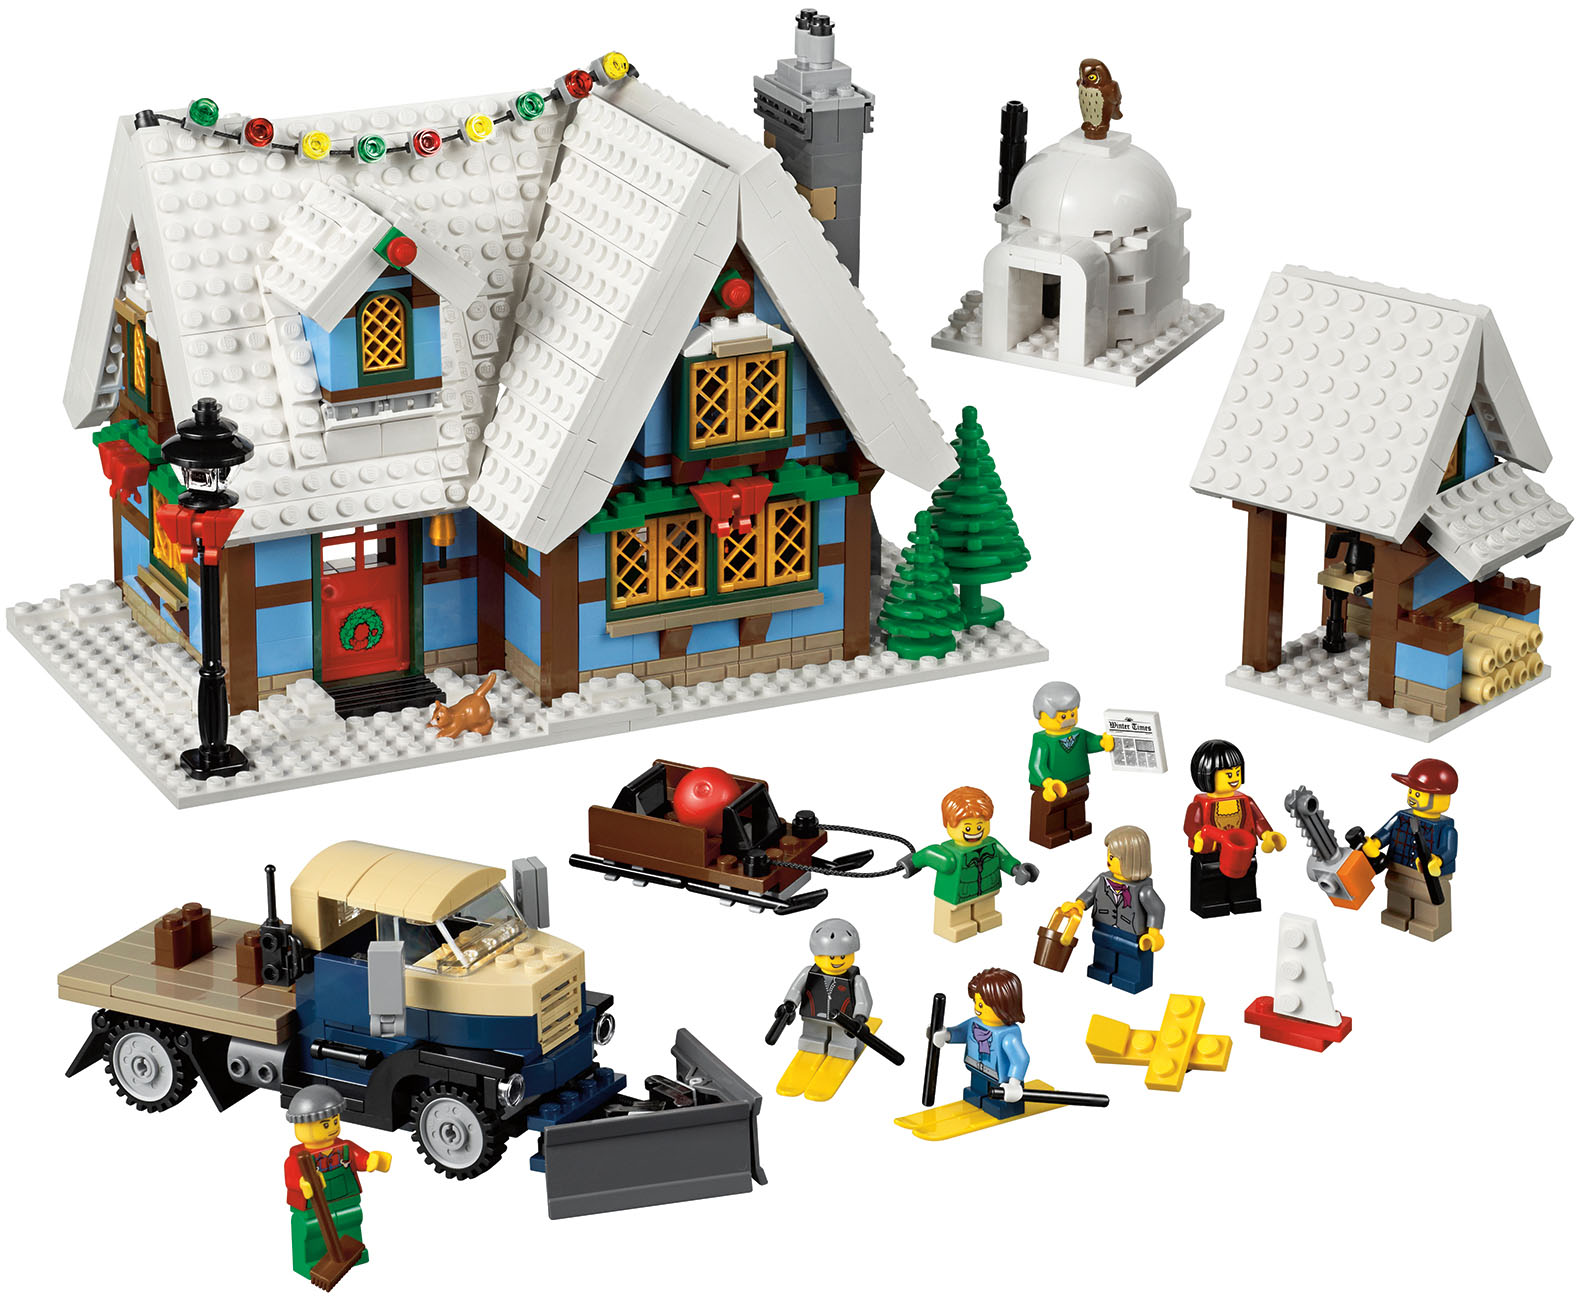 Lego Batman 2013 Winter Sets